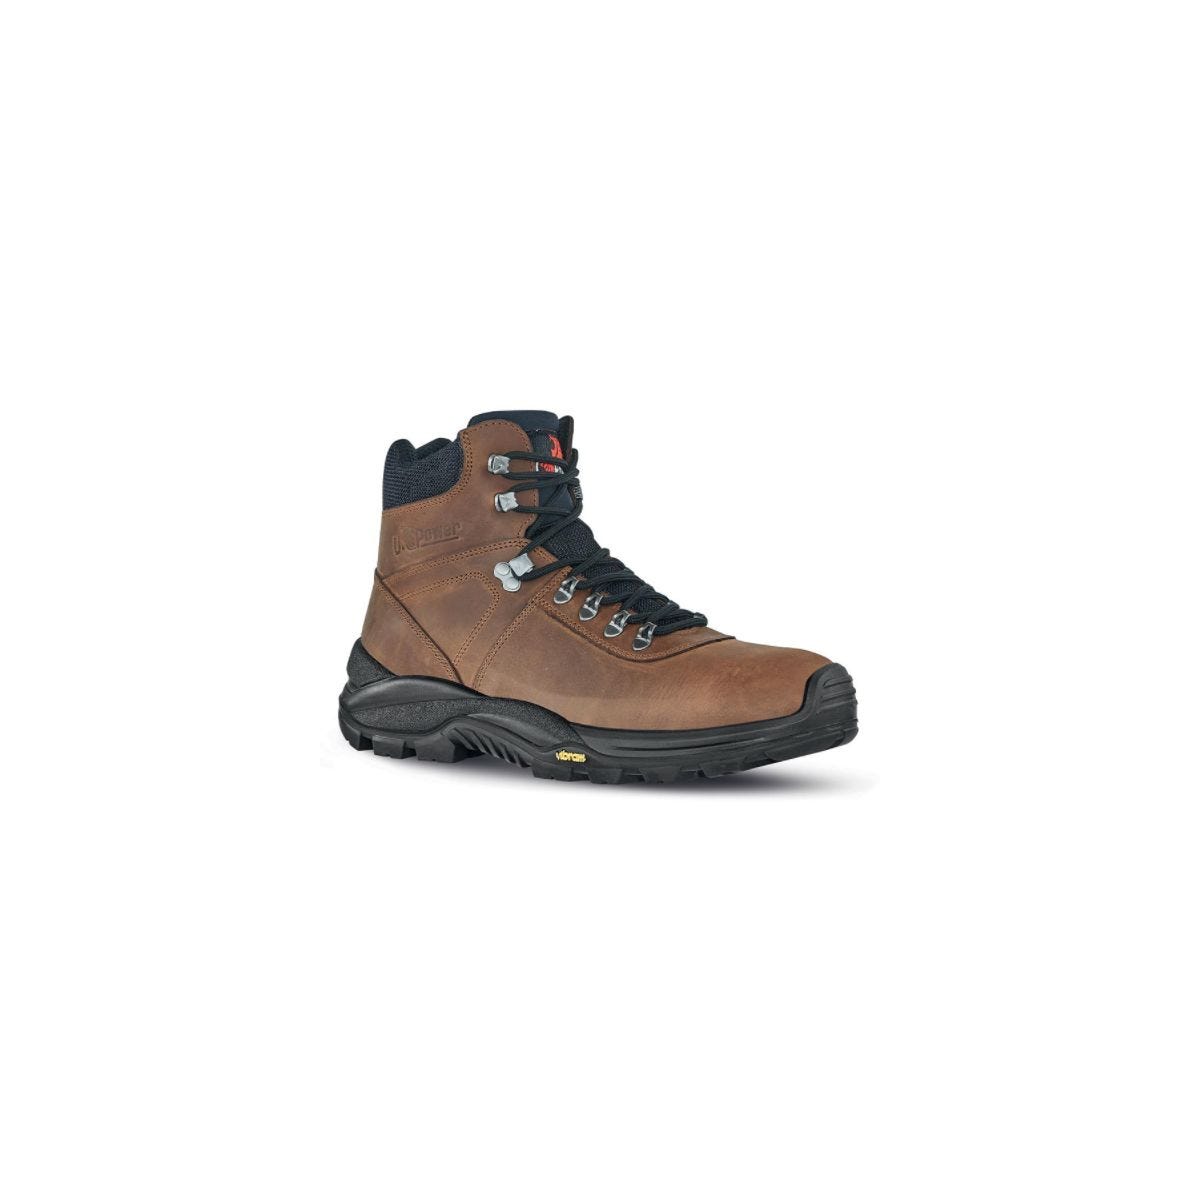 Chaussures de sécurité Trail S3 Marron - U-Power - Taille 40 0